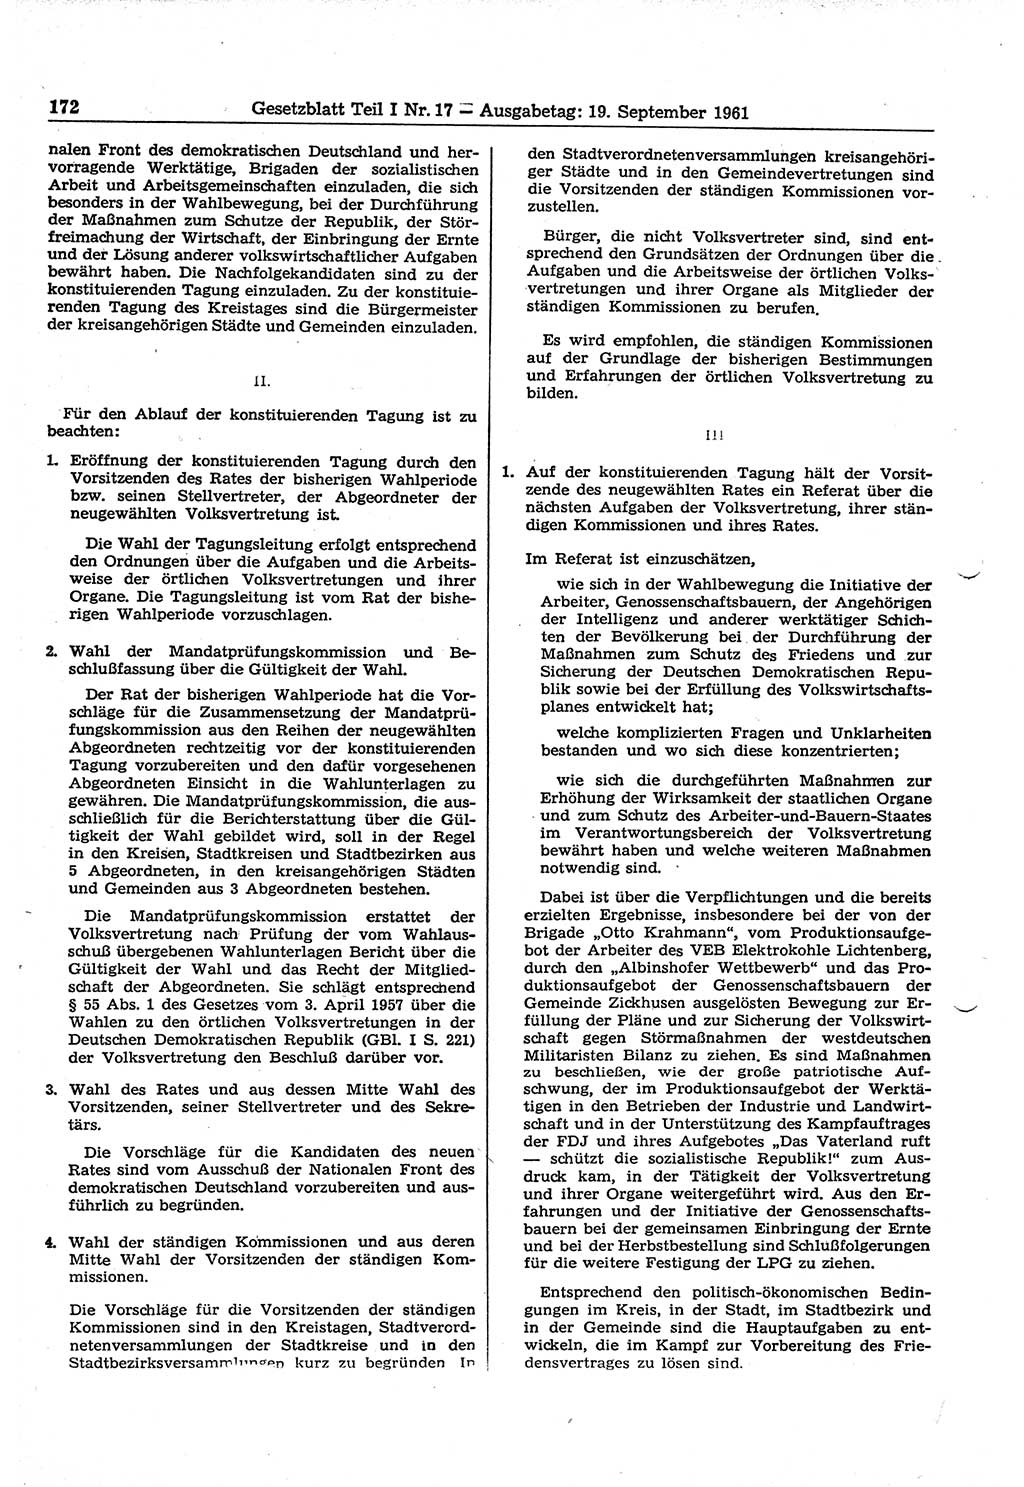 Gesetzblatt (GBl.) der Deutschen Demokratischen Republik (DDR) Teil Ⅰ 1961, Seite 172 (GBl. DDR Ⅰ 1961, S. 172)